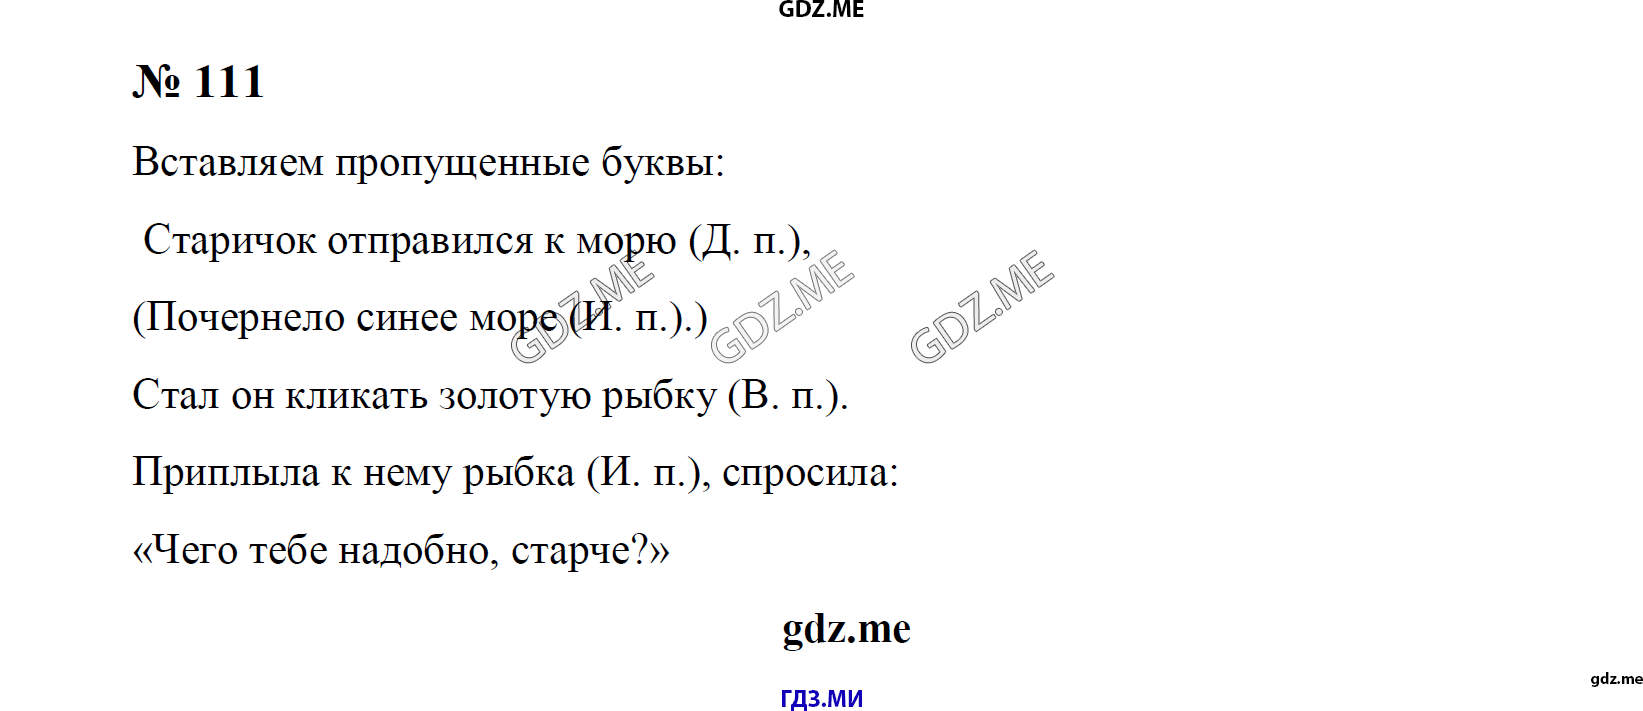 Английский язык страница 111 упражнение 5. Гдз по русскому языку 4 класс 2 часть номер 111.